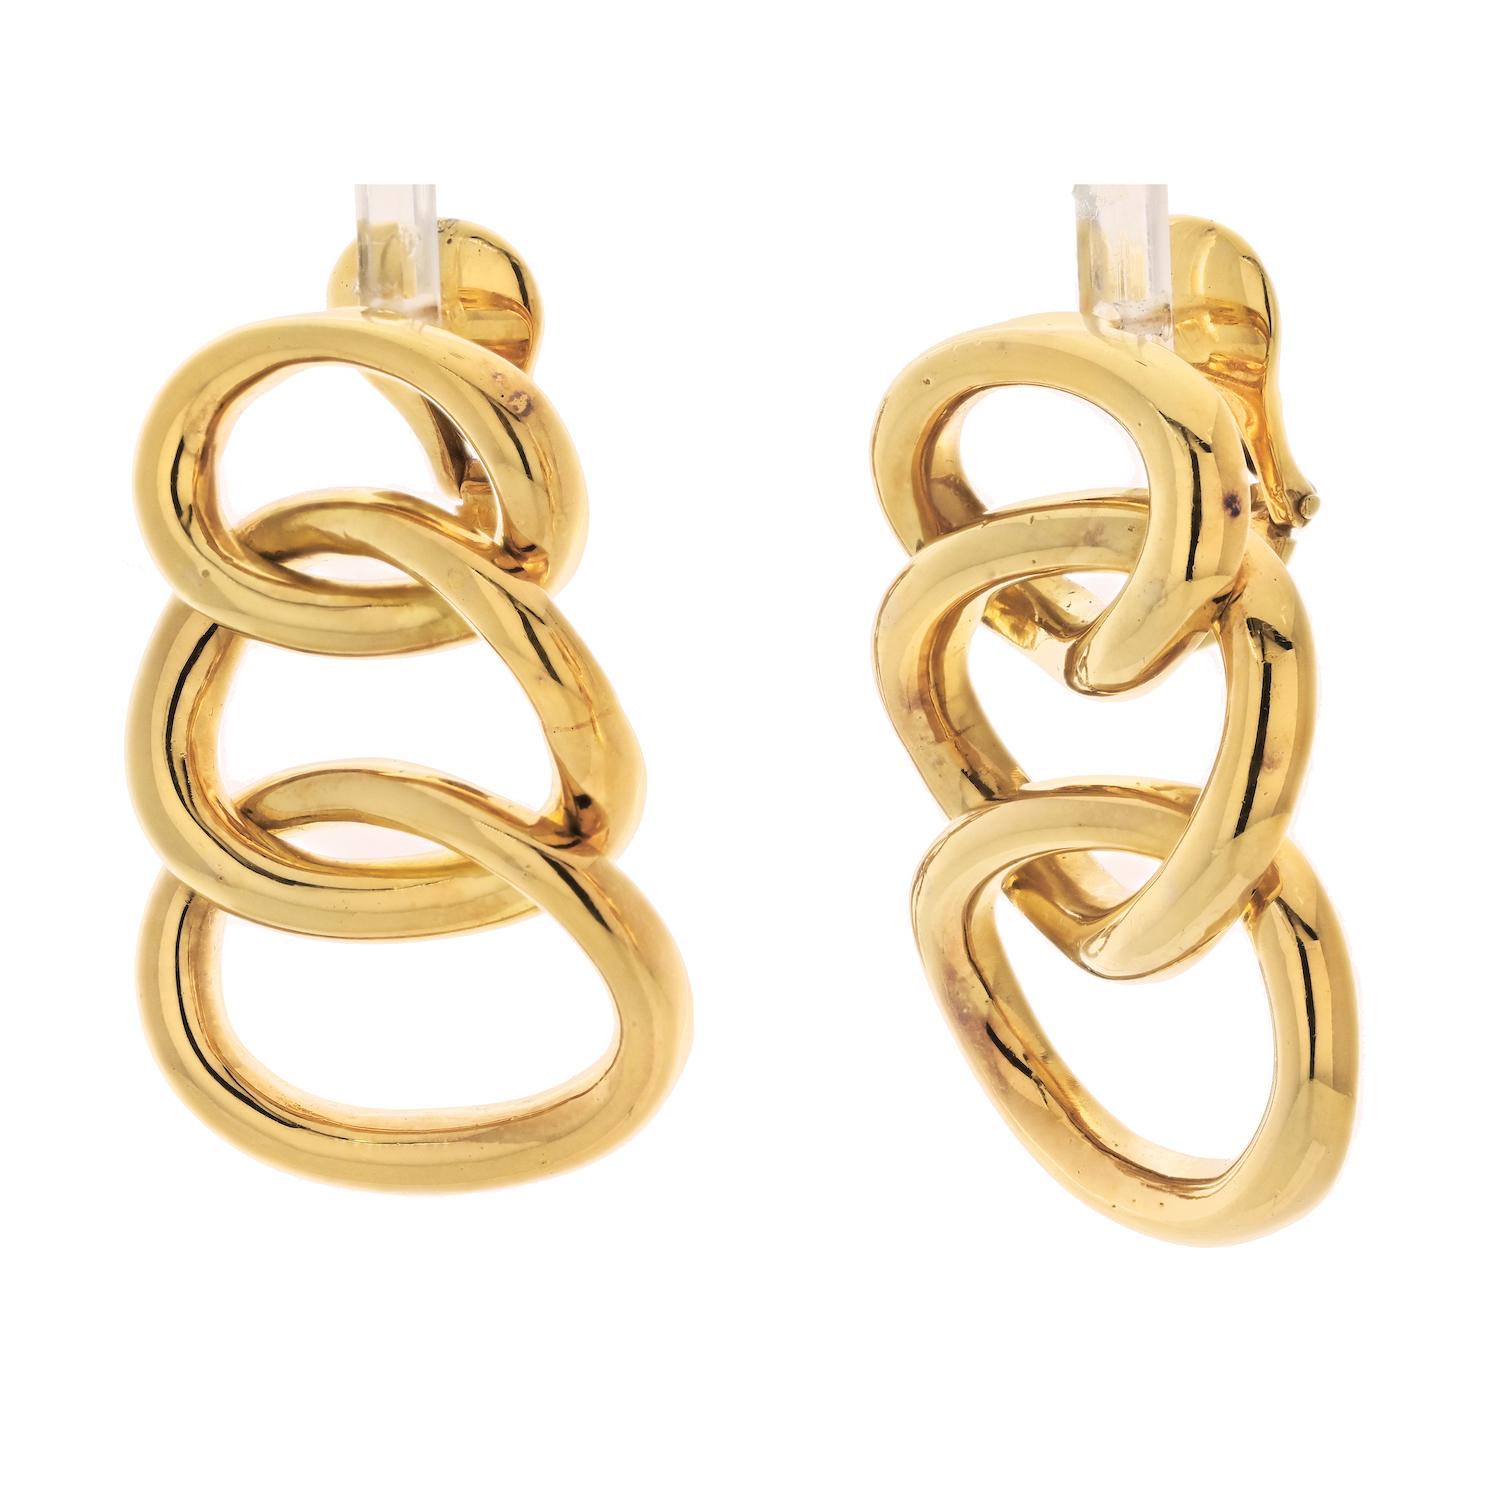 Die David Webb 18K Yellow Gold triple Oval Layered Hoop Style Clip On Earrings sind ein atemberaubendes Beispiel für die Kunstfertigkeit und das Können des Designers. 

Diese Ohrringe zeichnen sich durch ein geschichtetes Reifendesign aus, bei dem